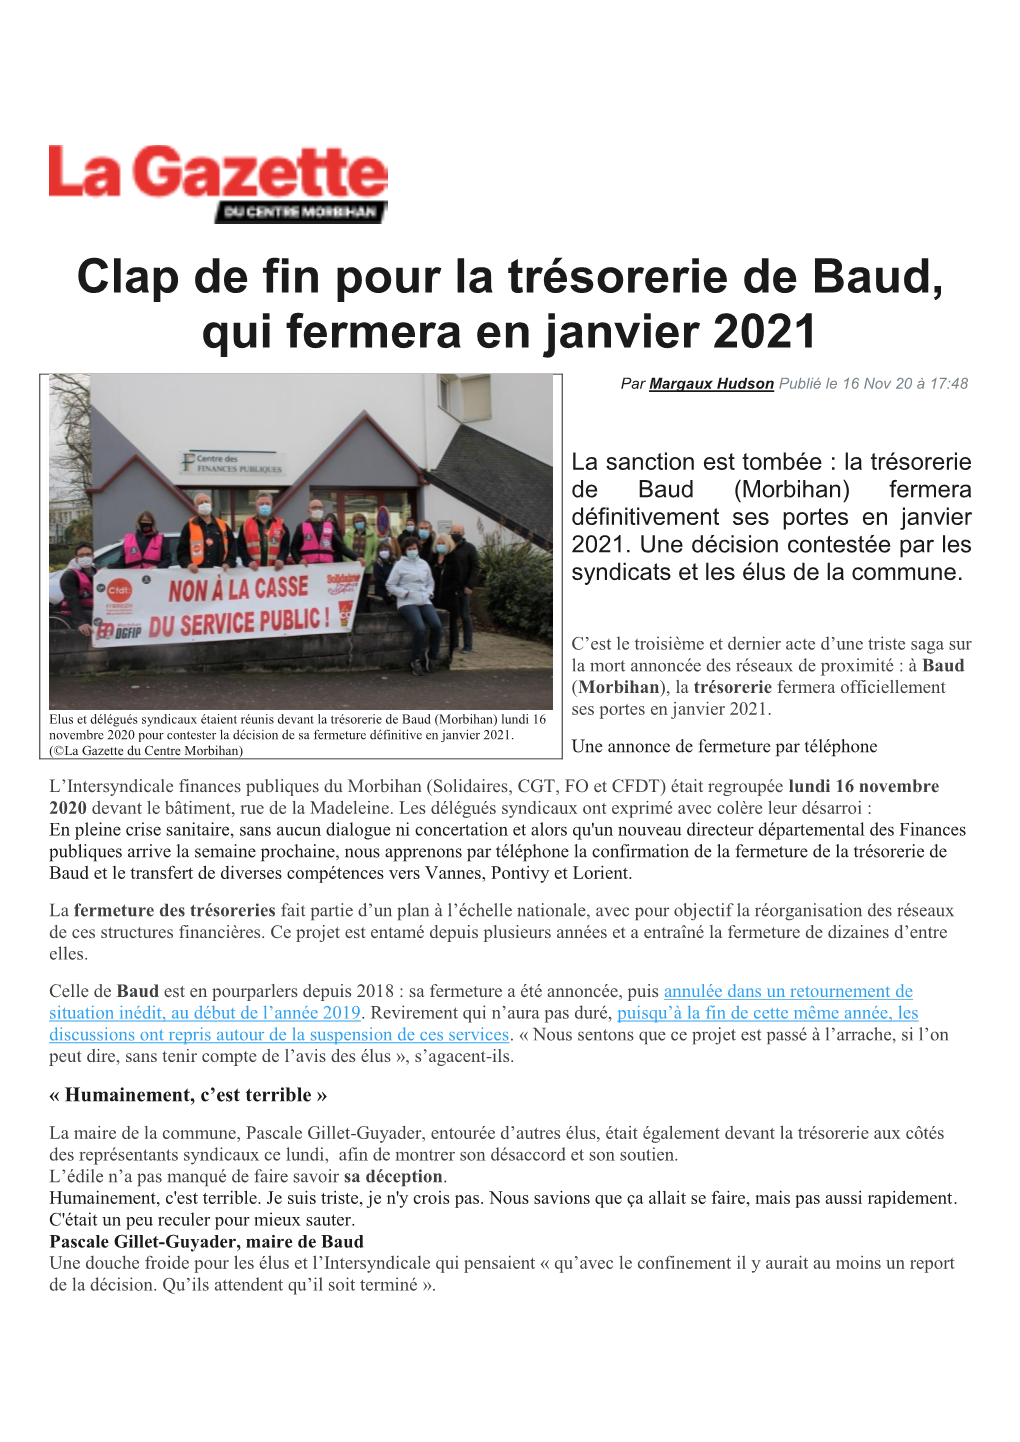 Clap De Fin Pour La Trésorerie De Baud, Qui Fermera En Janvier 2021